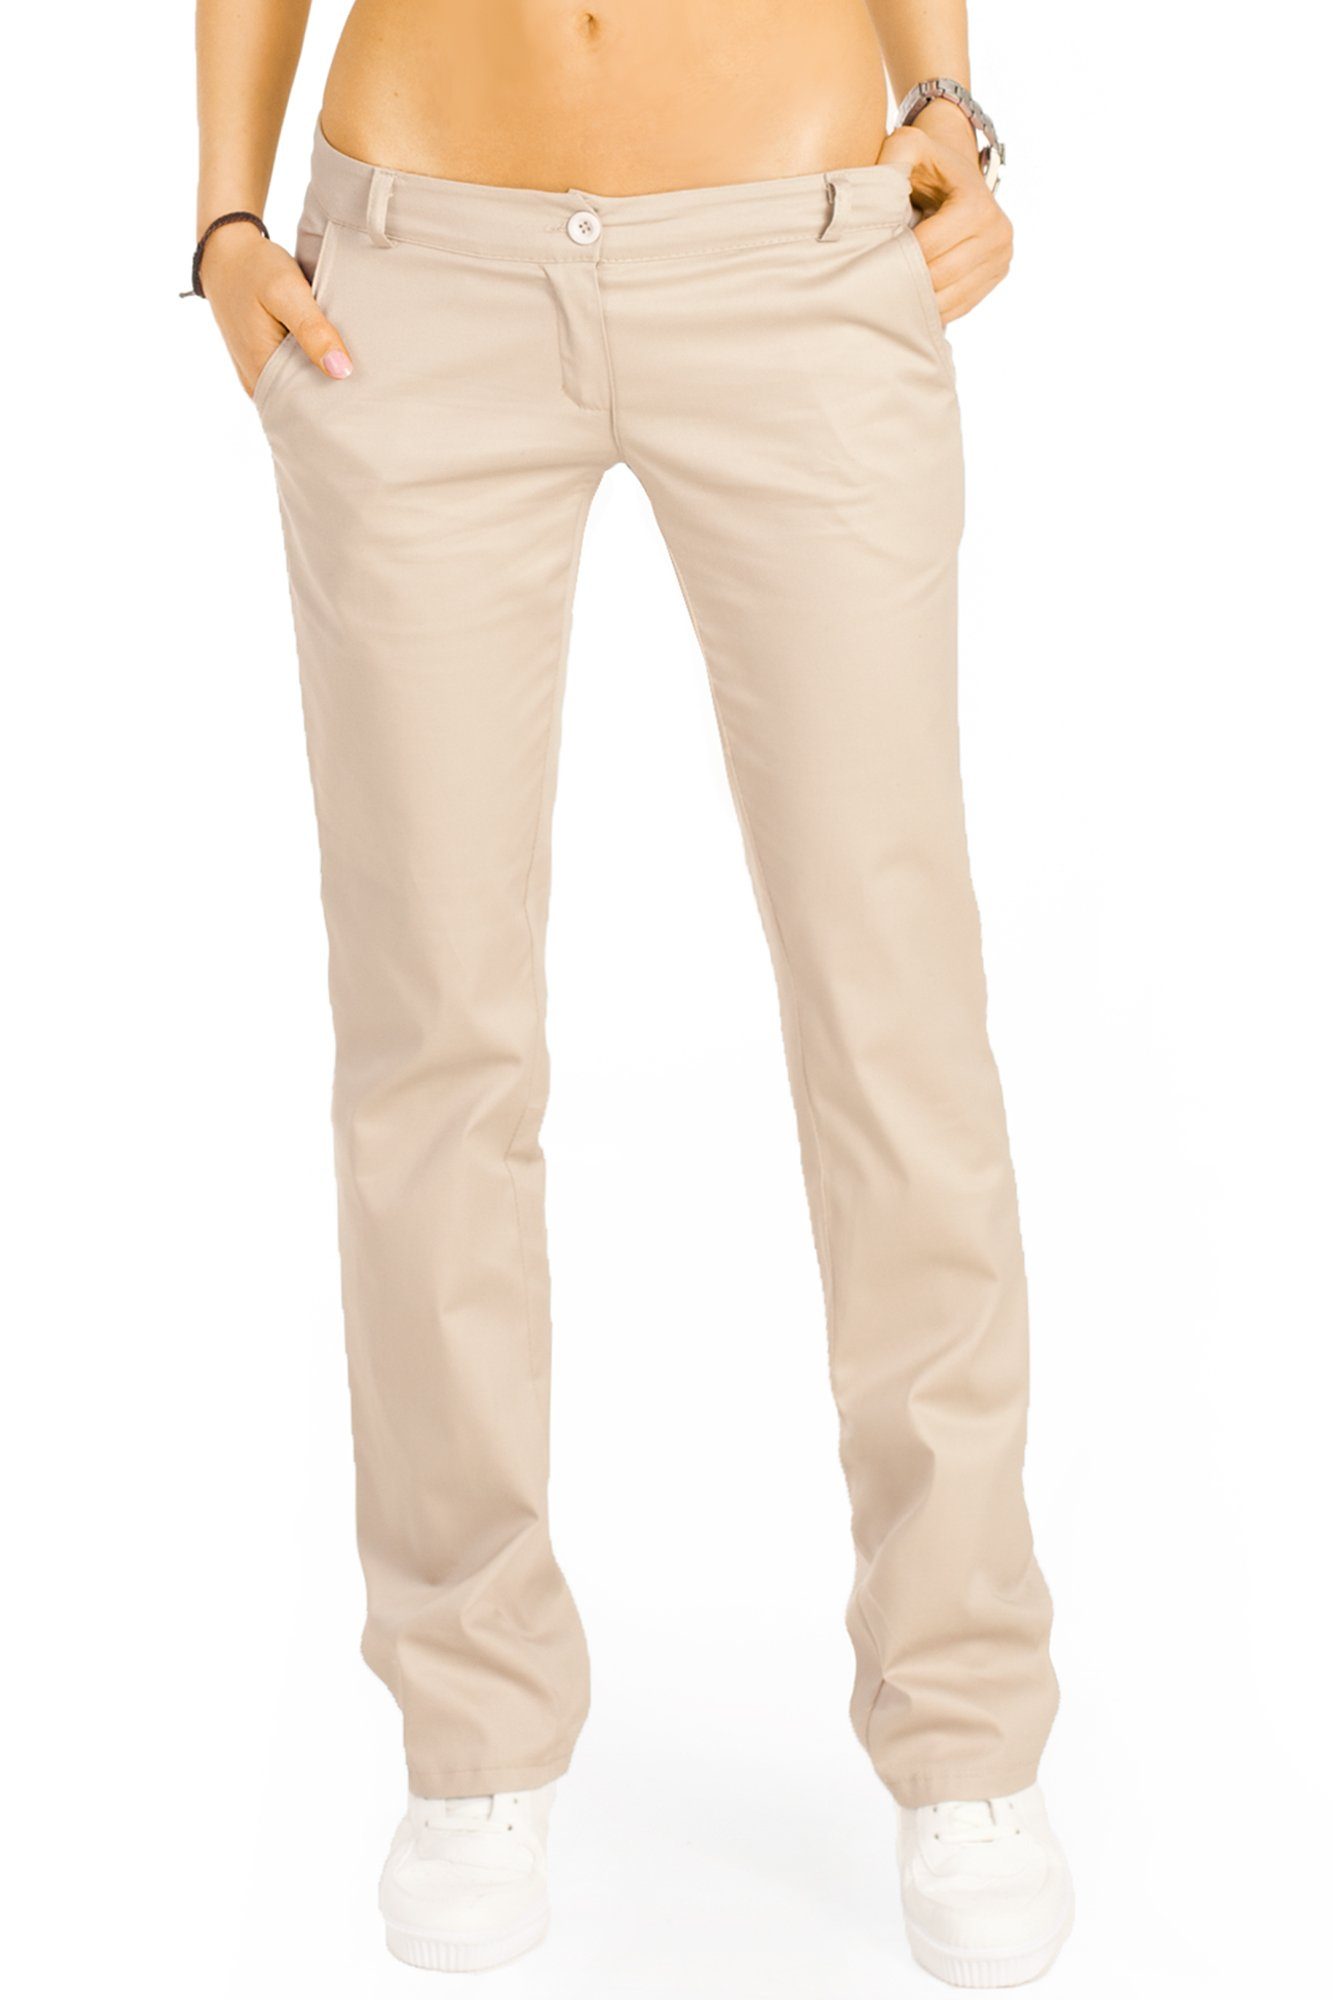 be styled Bootcuthose low waist Damenhosen, ausgestellte Hüfthose in vielen Farben j20k beige